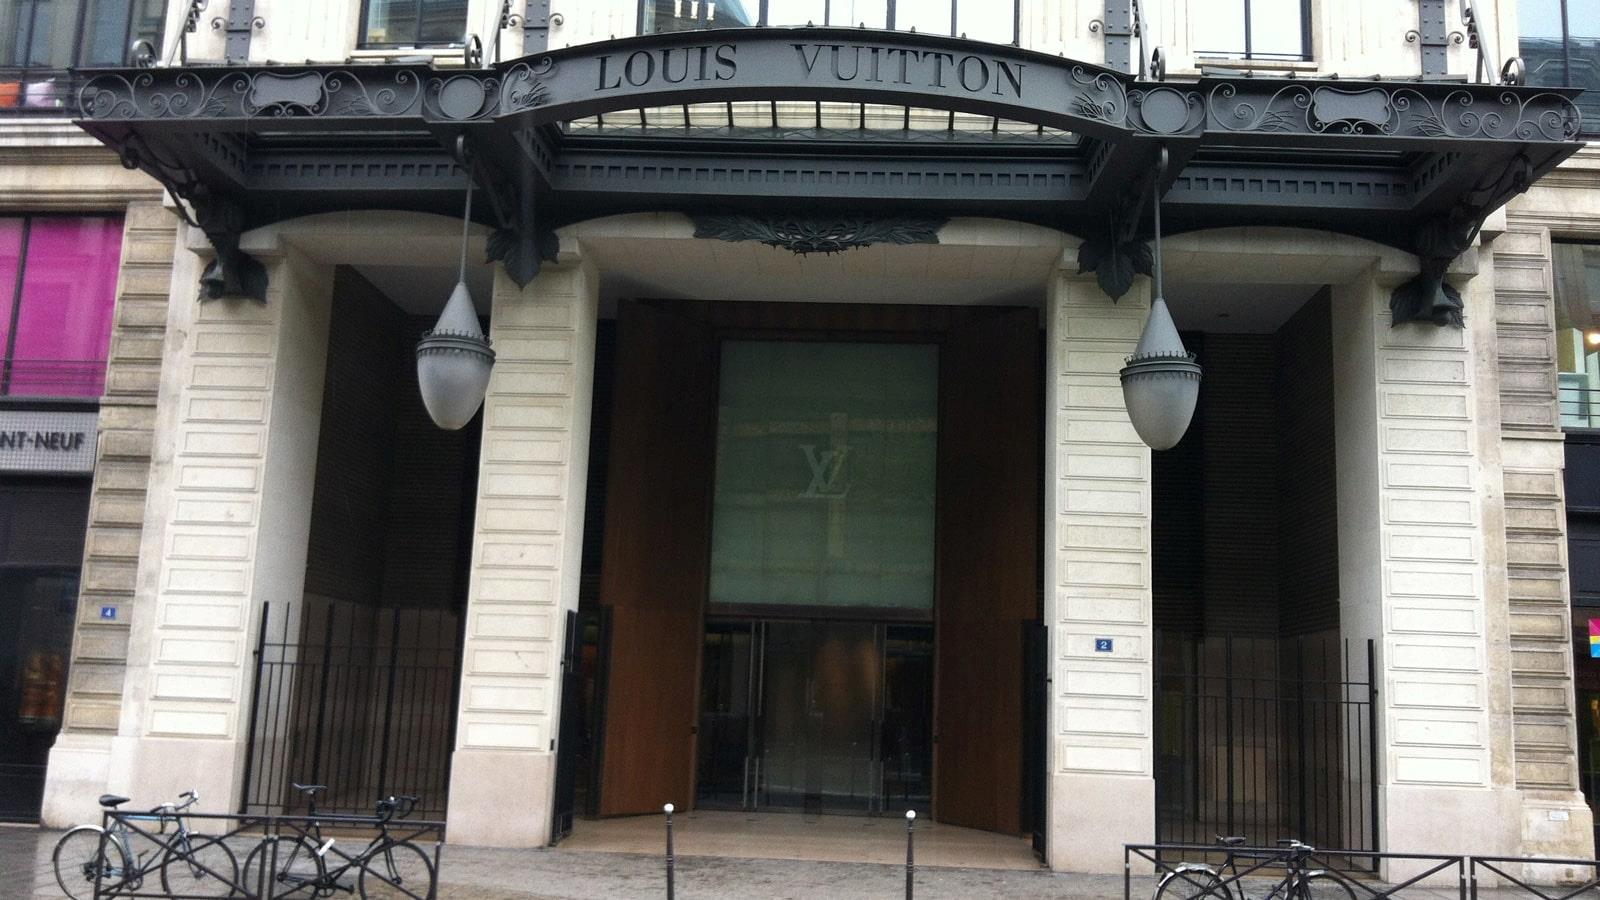 Entrance to Louis Vuitton headquarters in Paris